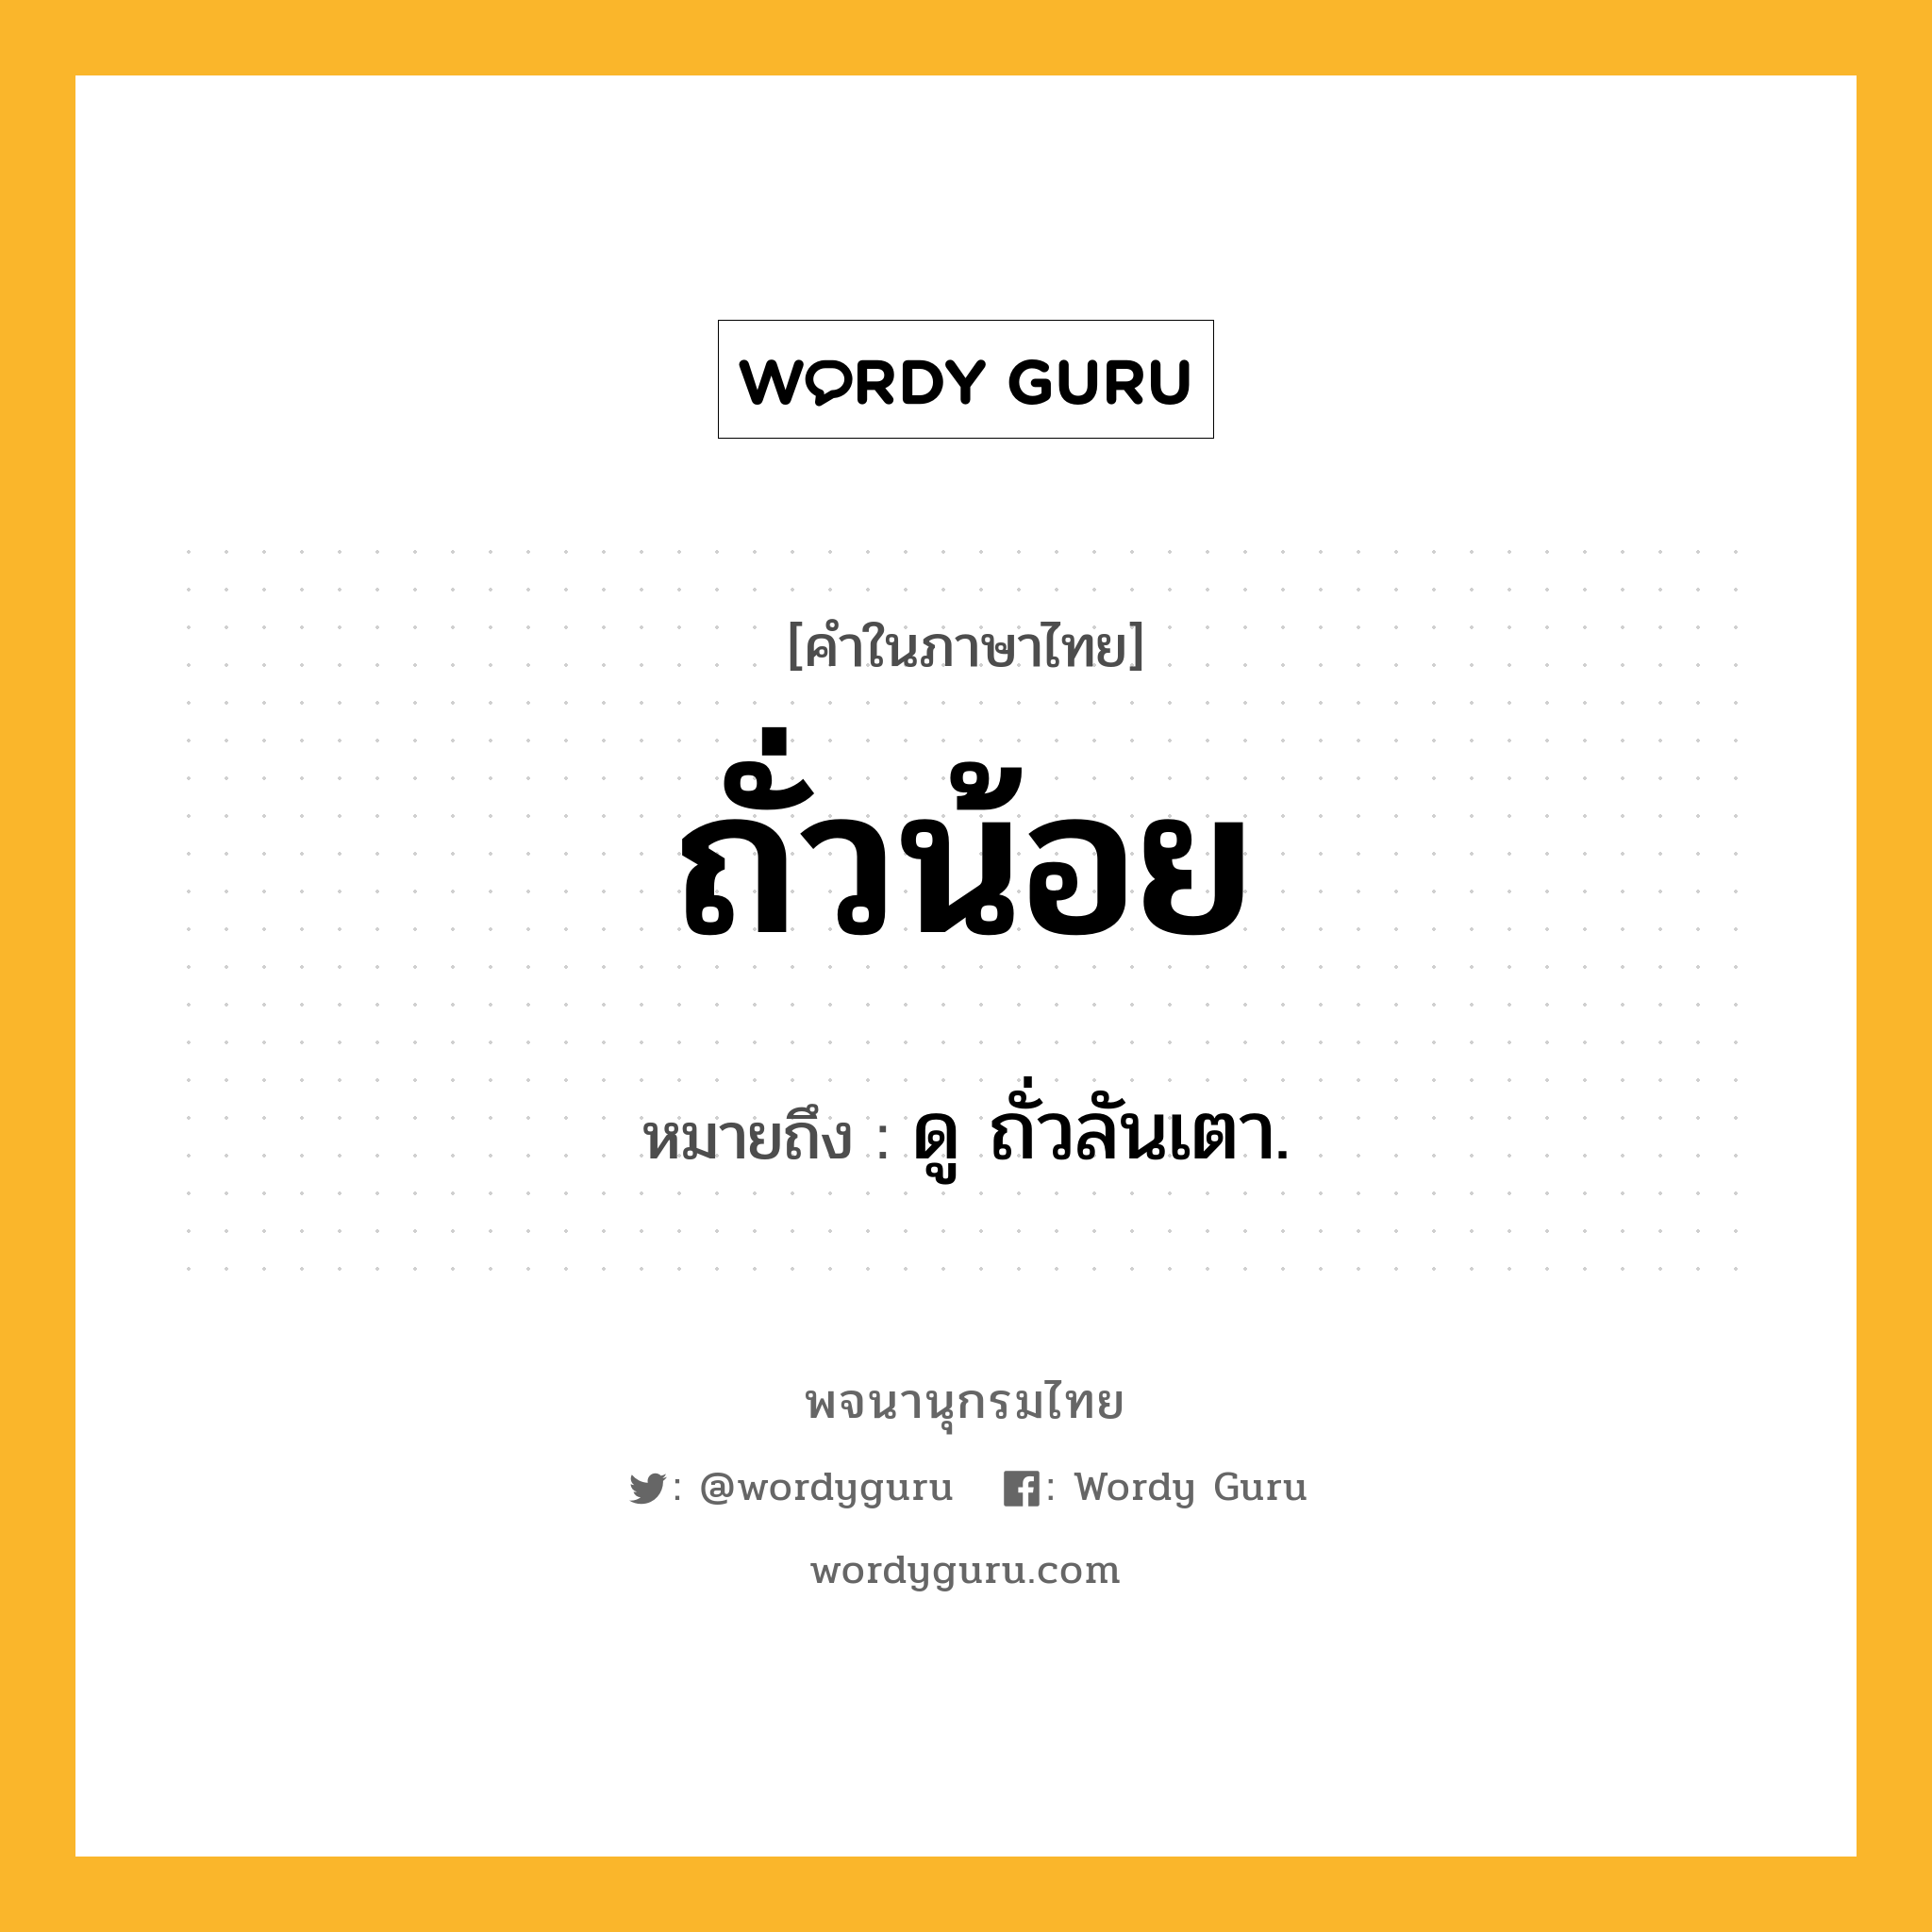 ถั่วน้อย ความหมาย หมายถึงอะไร?, คำในภาษาไทย ถั่วน้อย หมายถึง ดู ถั่วลันเตา.